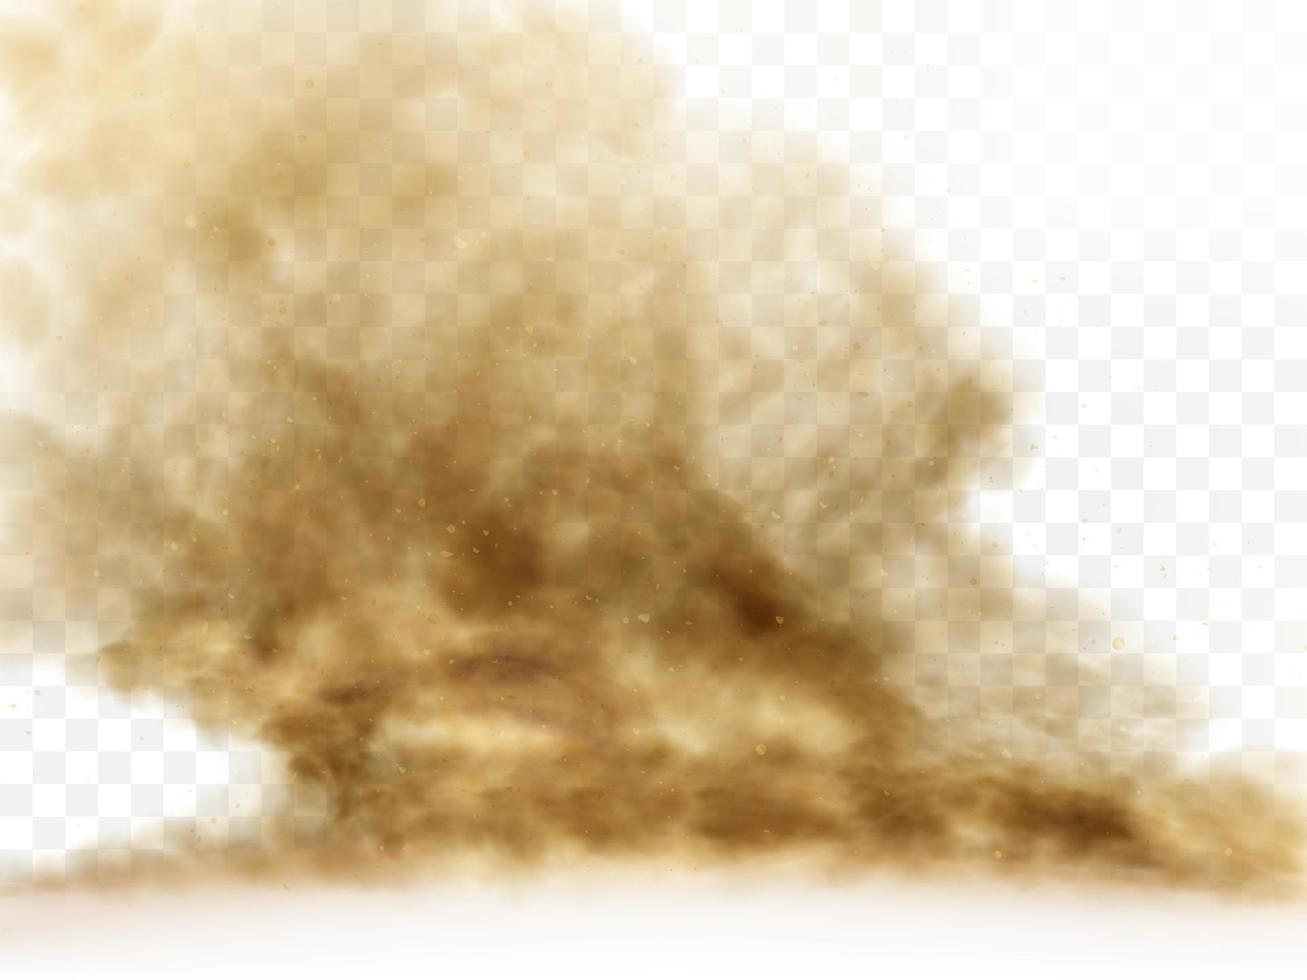 Desert sandstorm, brown dusty cloud vector